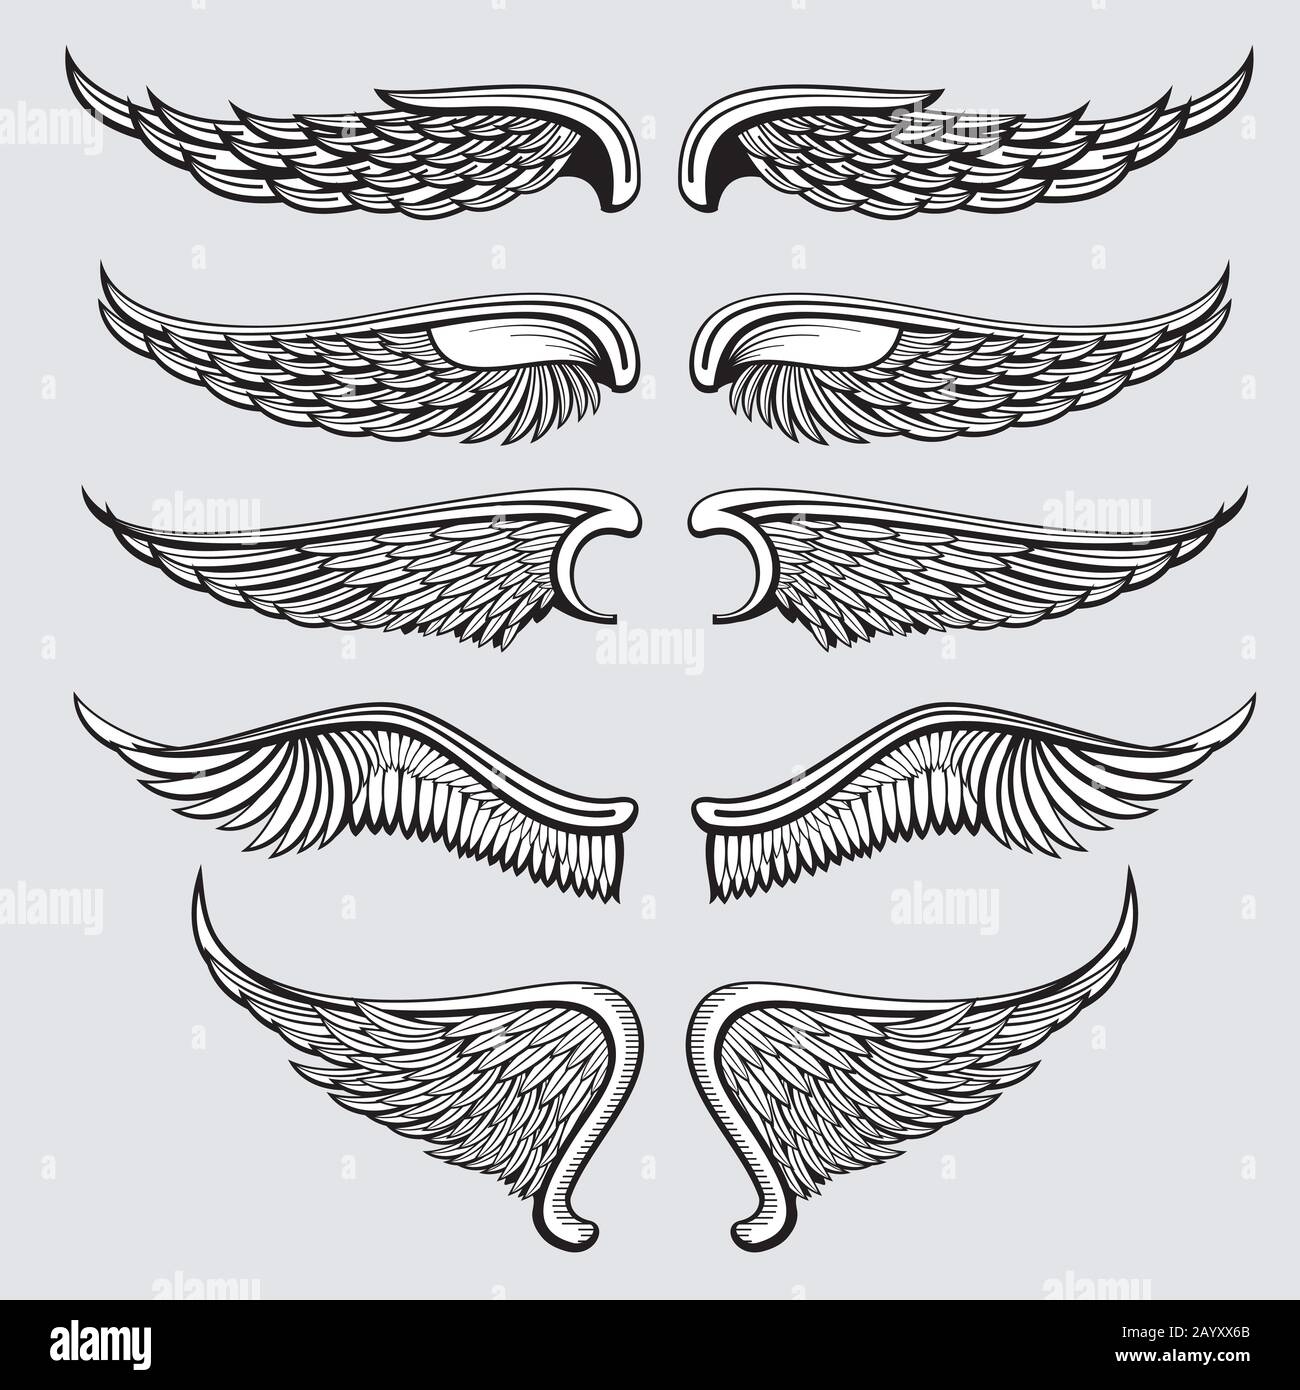 Oiseau héraldique, ensemble vectoriel des ailes d'ange. Ailes ange tatouage, illustration ailes gothiques aigle Illustration de Vecteur